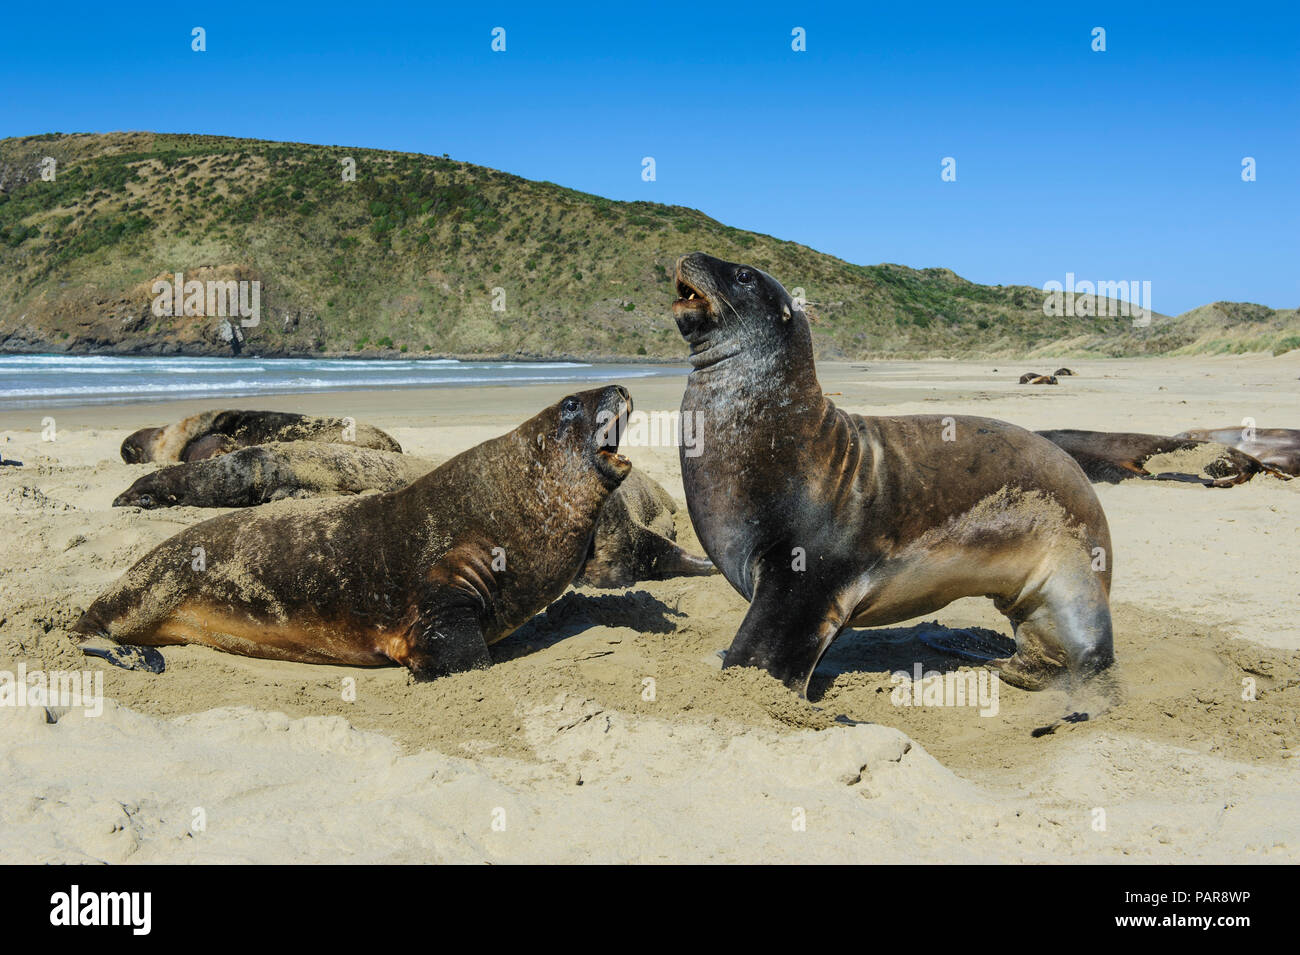 La puta de Lobos Marinos (Phocarctos hookeri), colonia en la playa, en la bahía, el caníbal Catlins, Isla del Sur, Nueva Zelanda Foto de stock